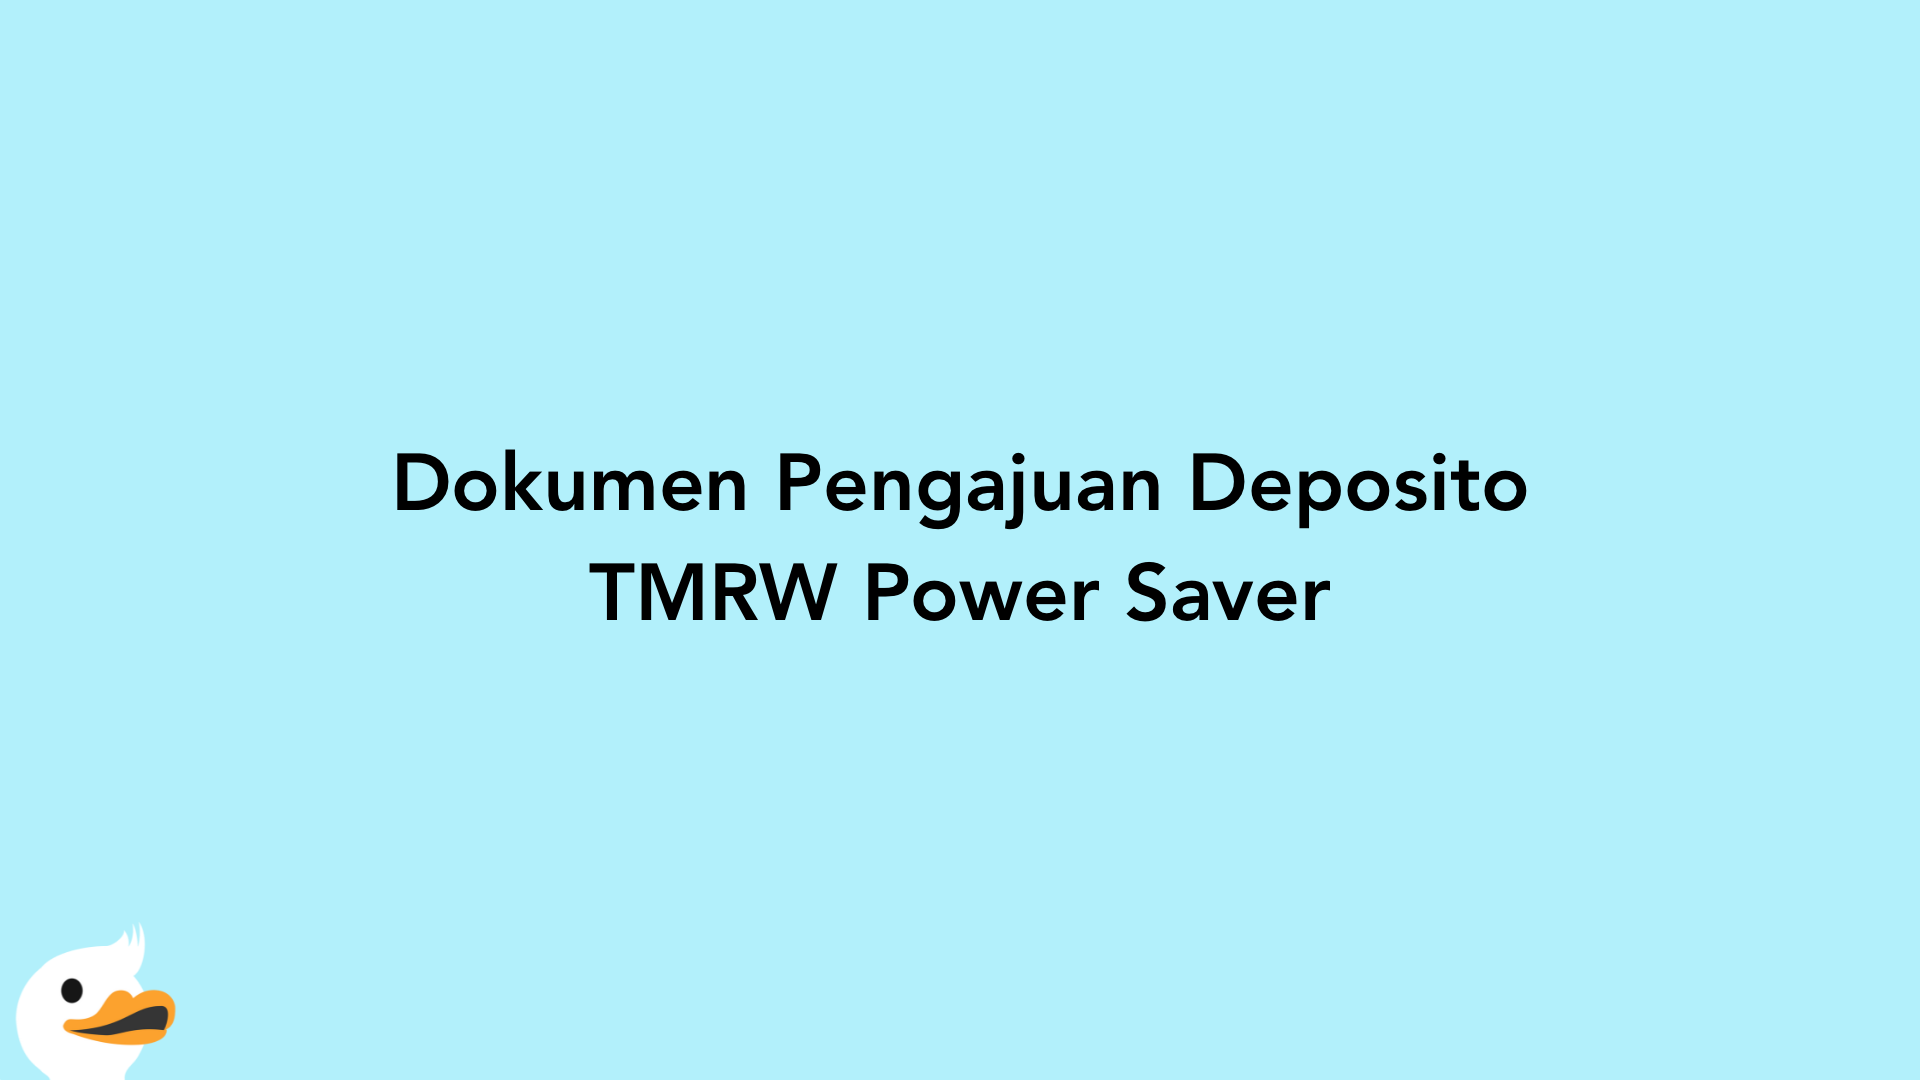 Dokumen Pengajuan Deposito TMRW Power Saver